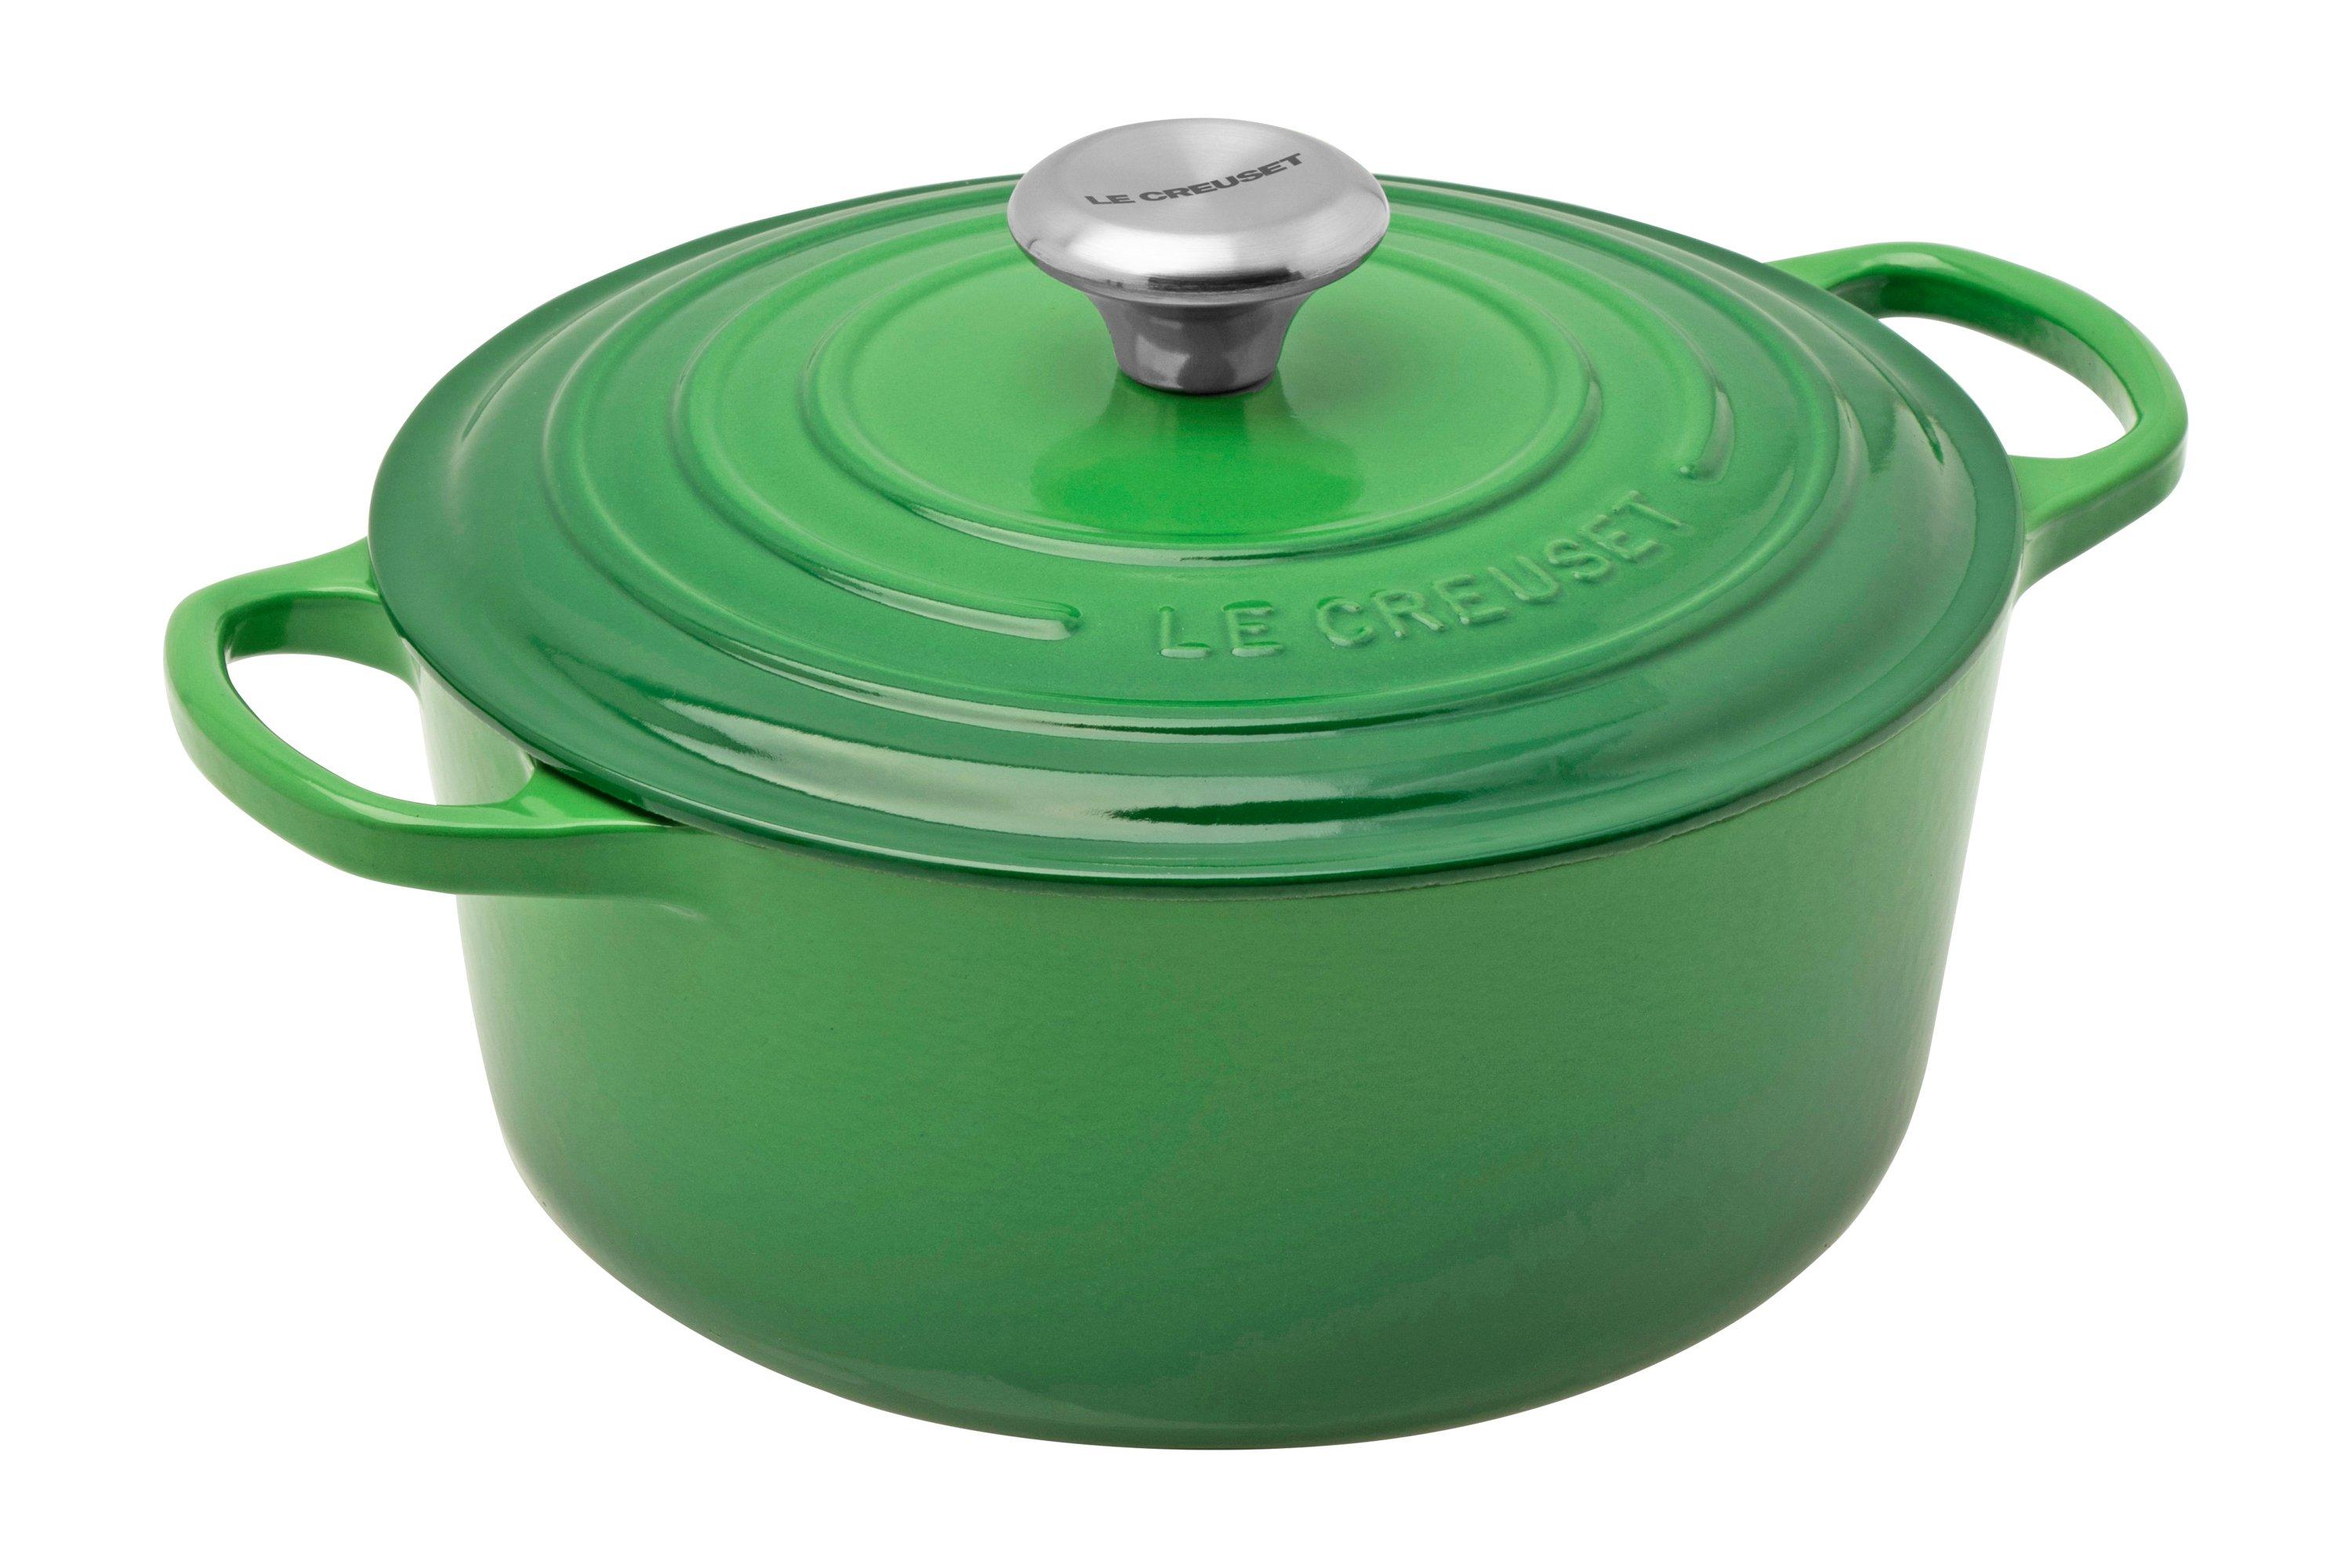 Le Creuset casserole - cocotte 24 cm, L green | at Knivesandtools.com